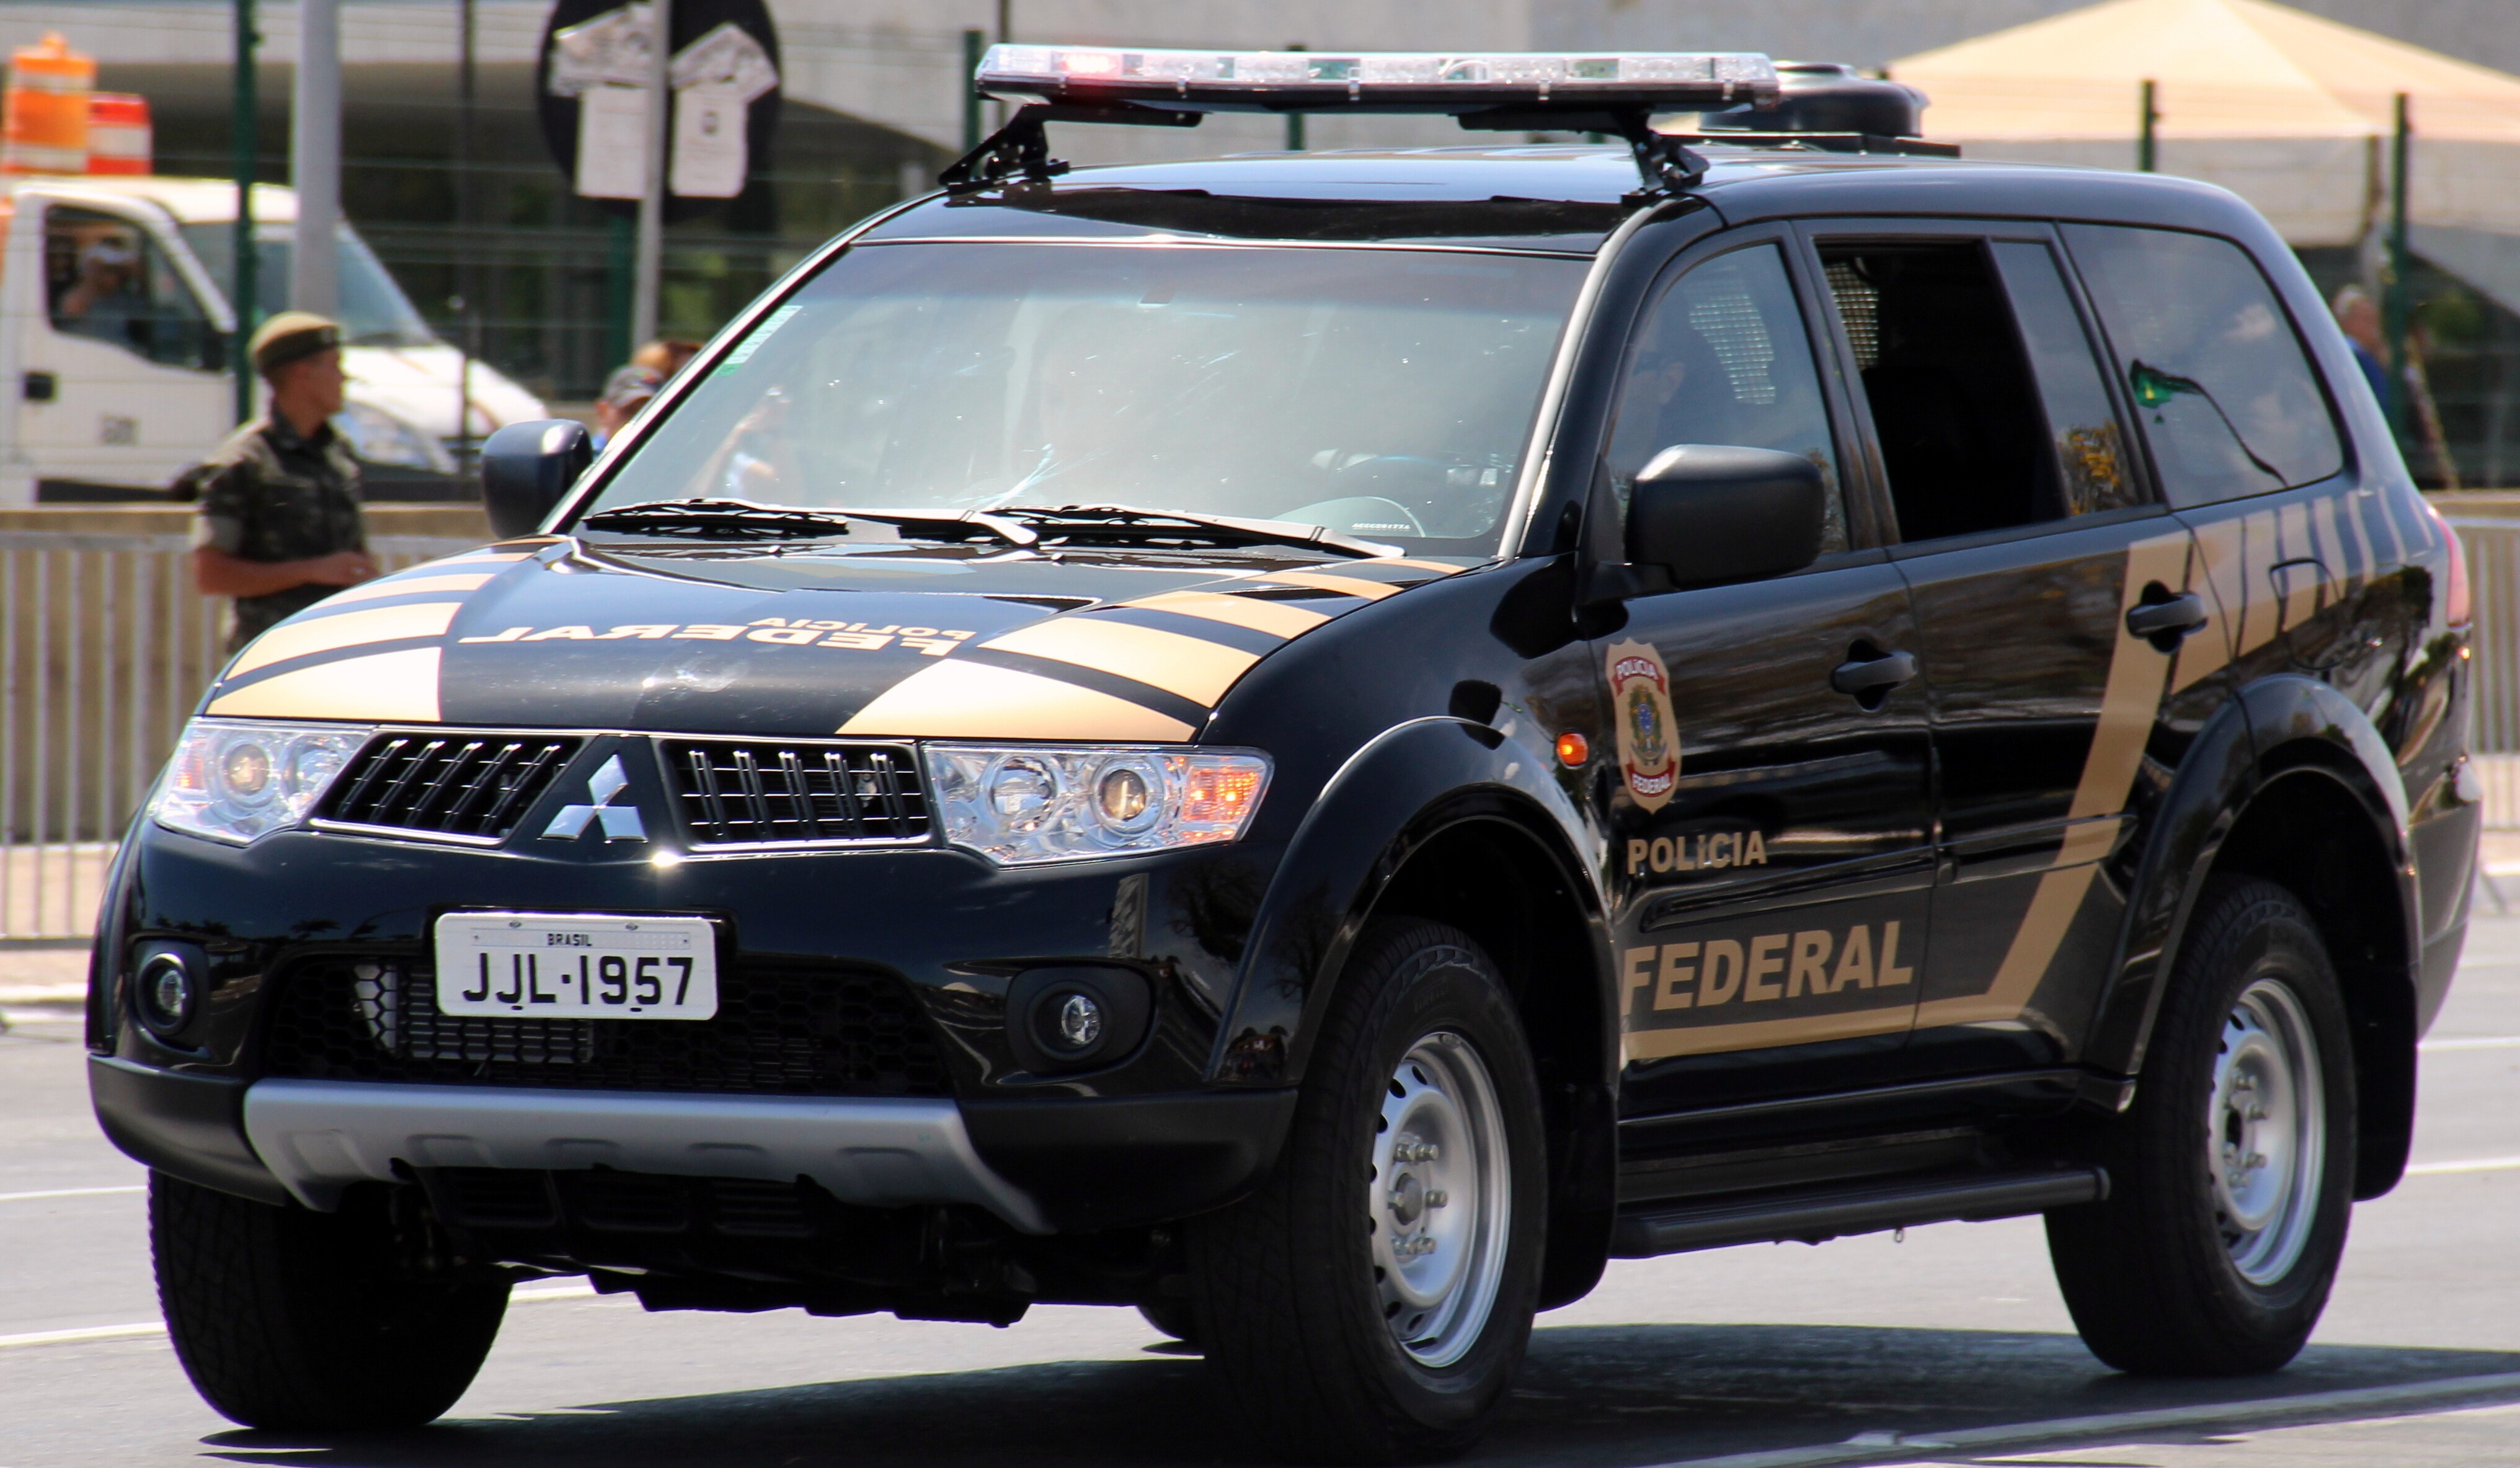 Polícia Federal durante operação